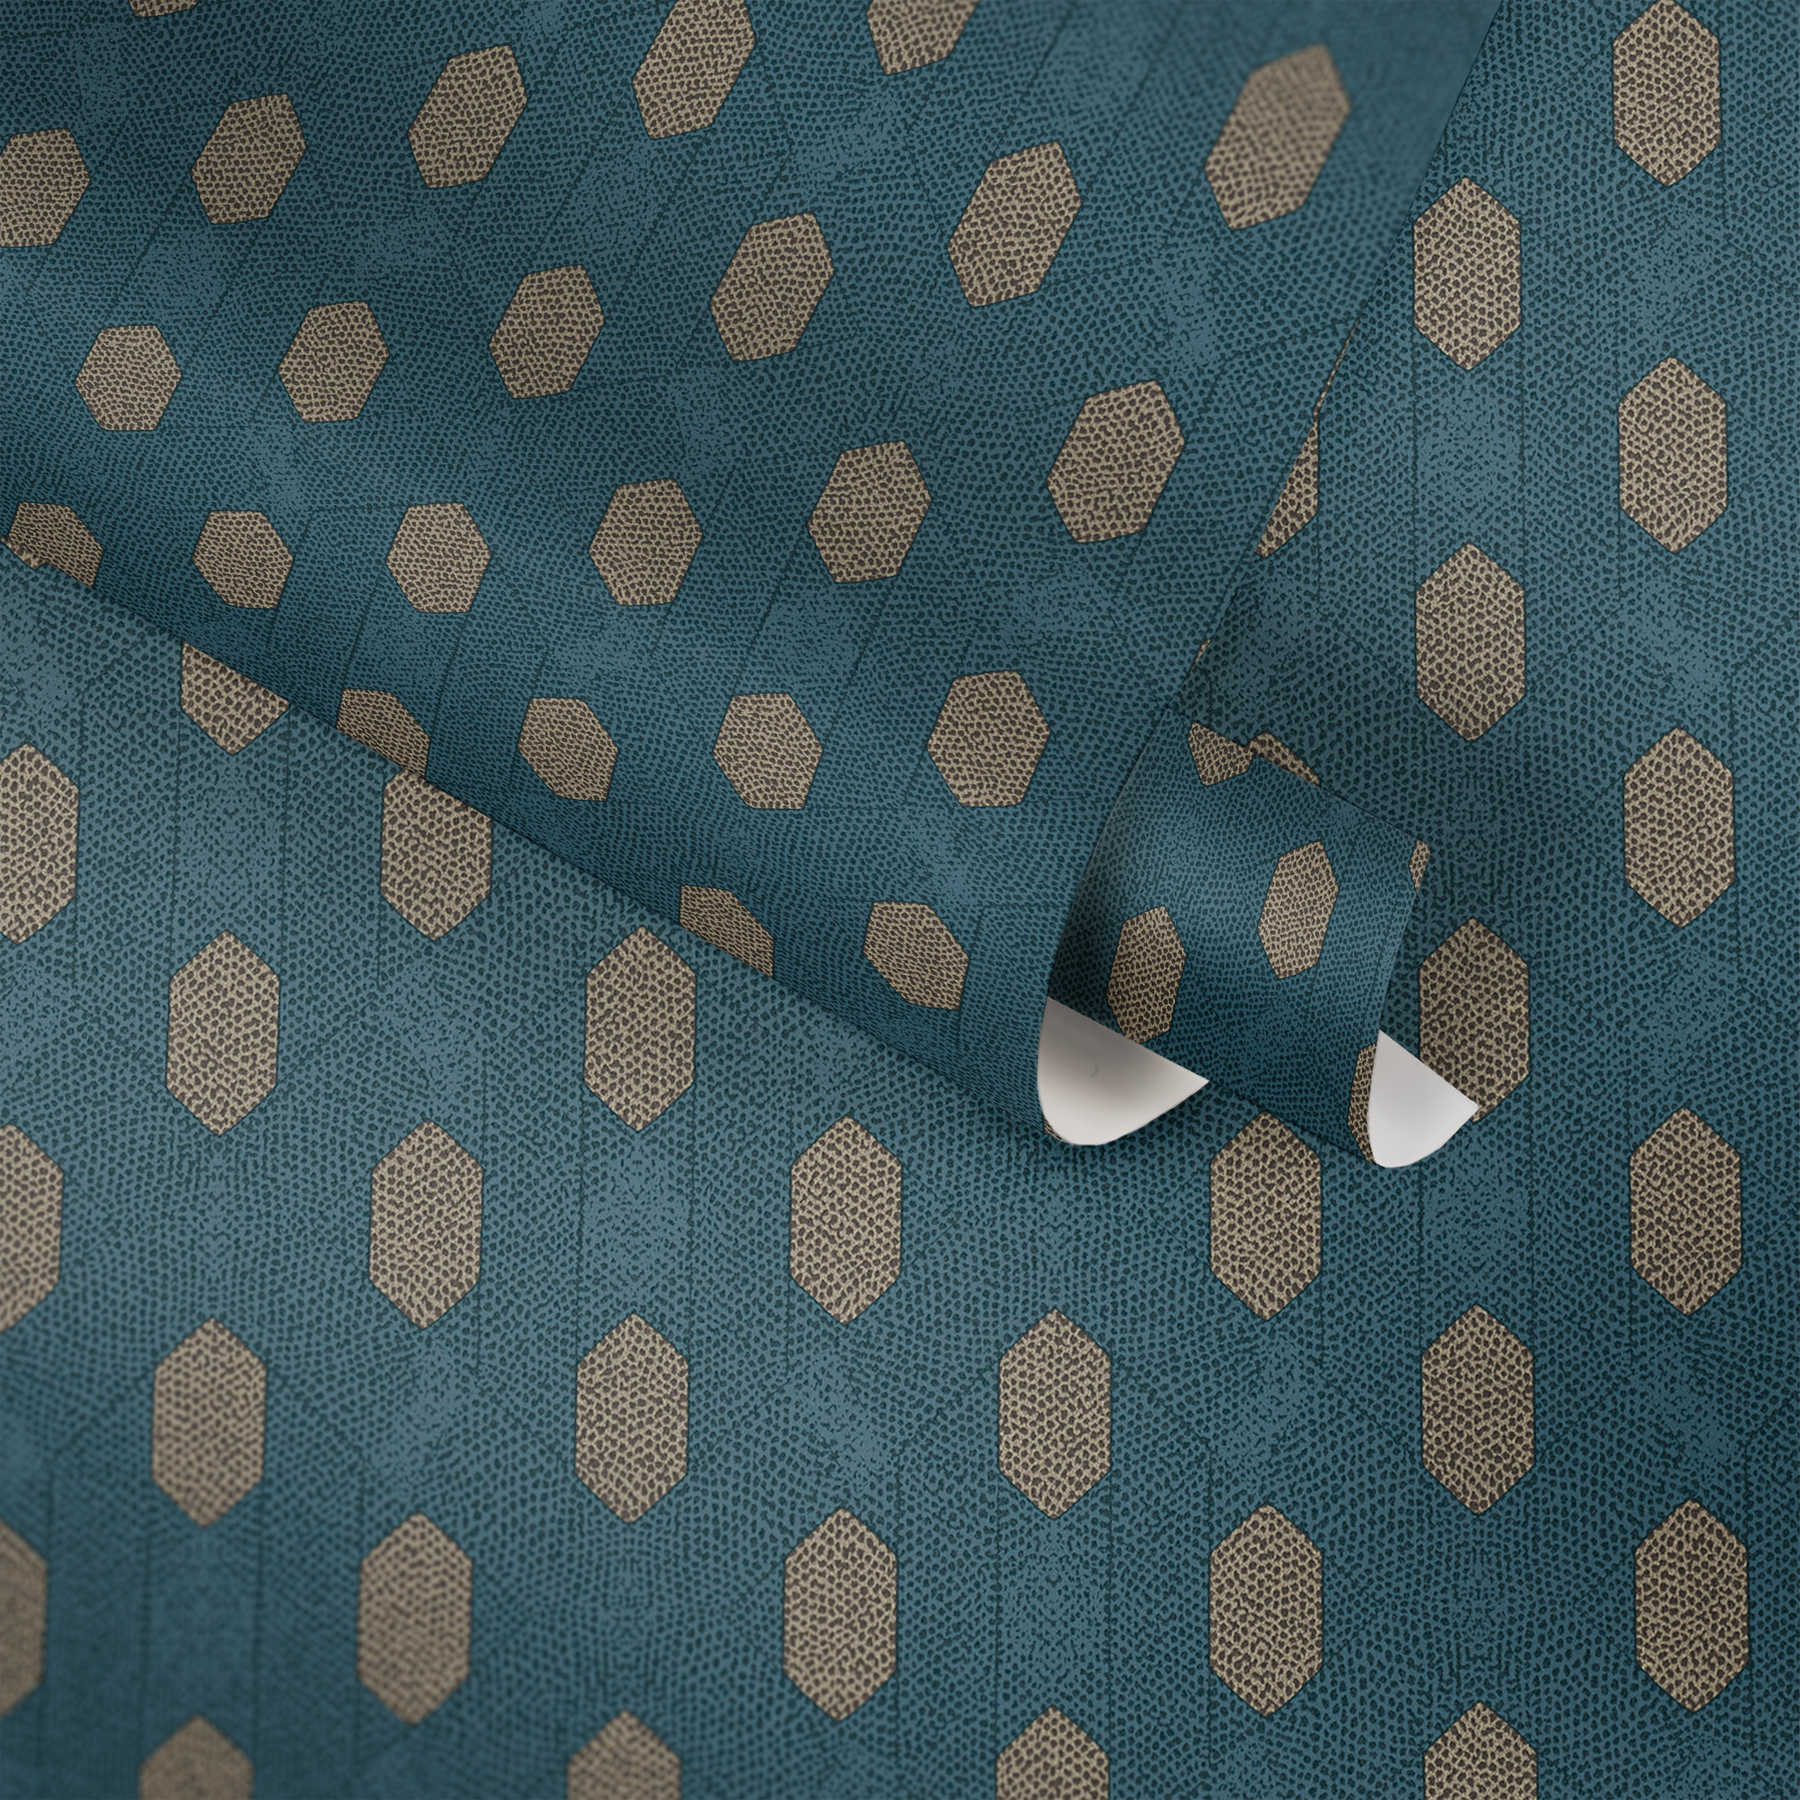             Blaue Tapete mit geometrische Muster & Gold Details – Blau, Braun, Beige
        